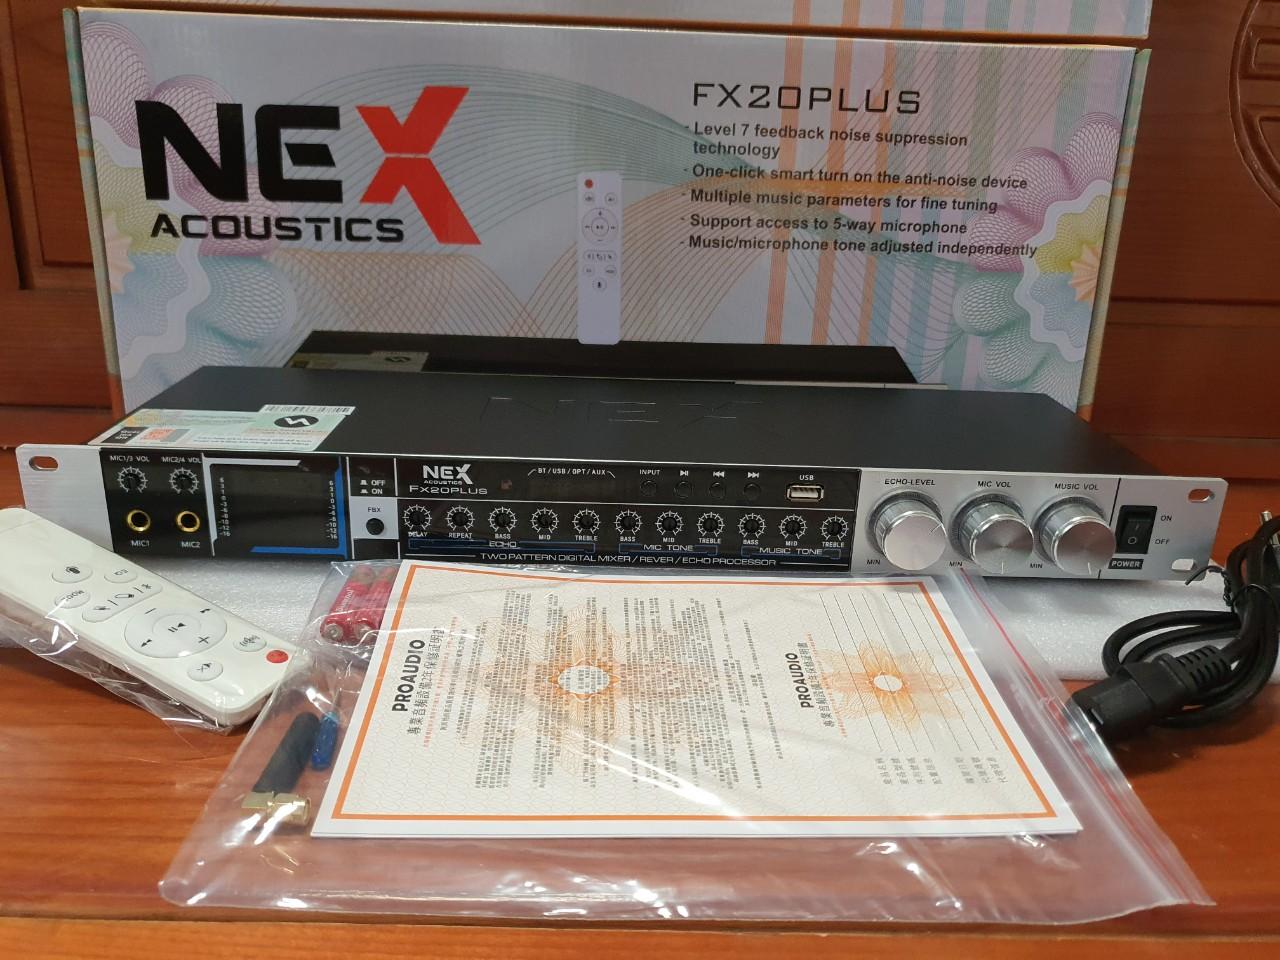 Vang cơ NEX Acoustic FX20 Plus, vang cơ Bluetooth chống hú NEX Acoustic FX20 Plus.